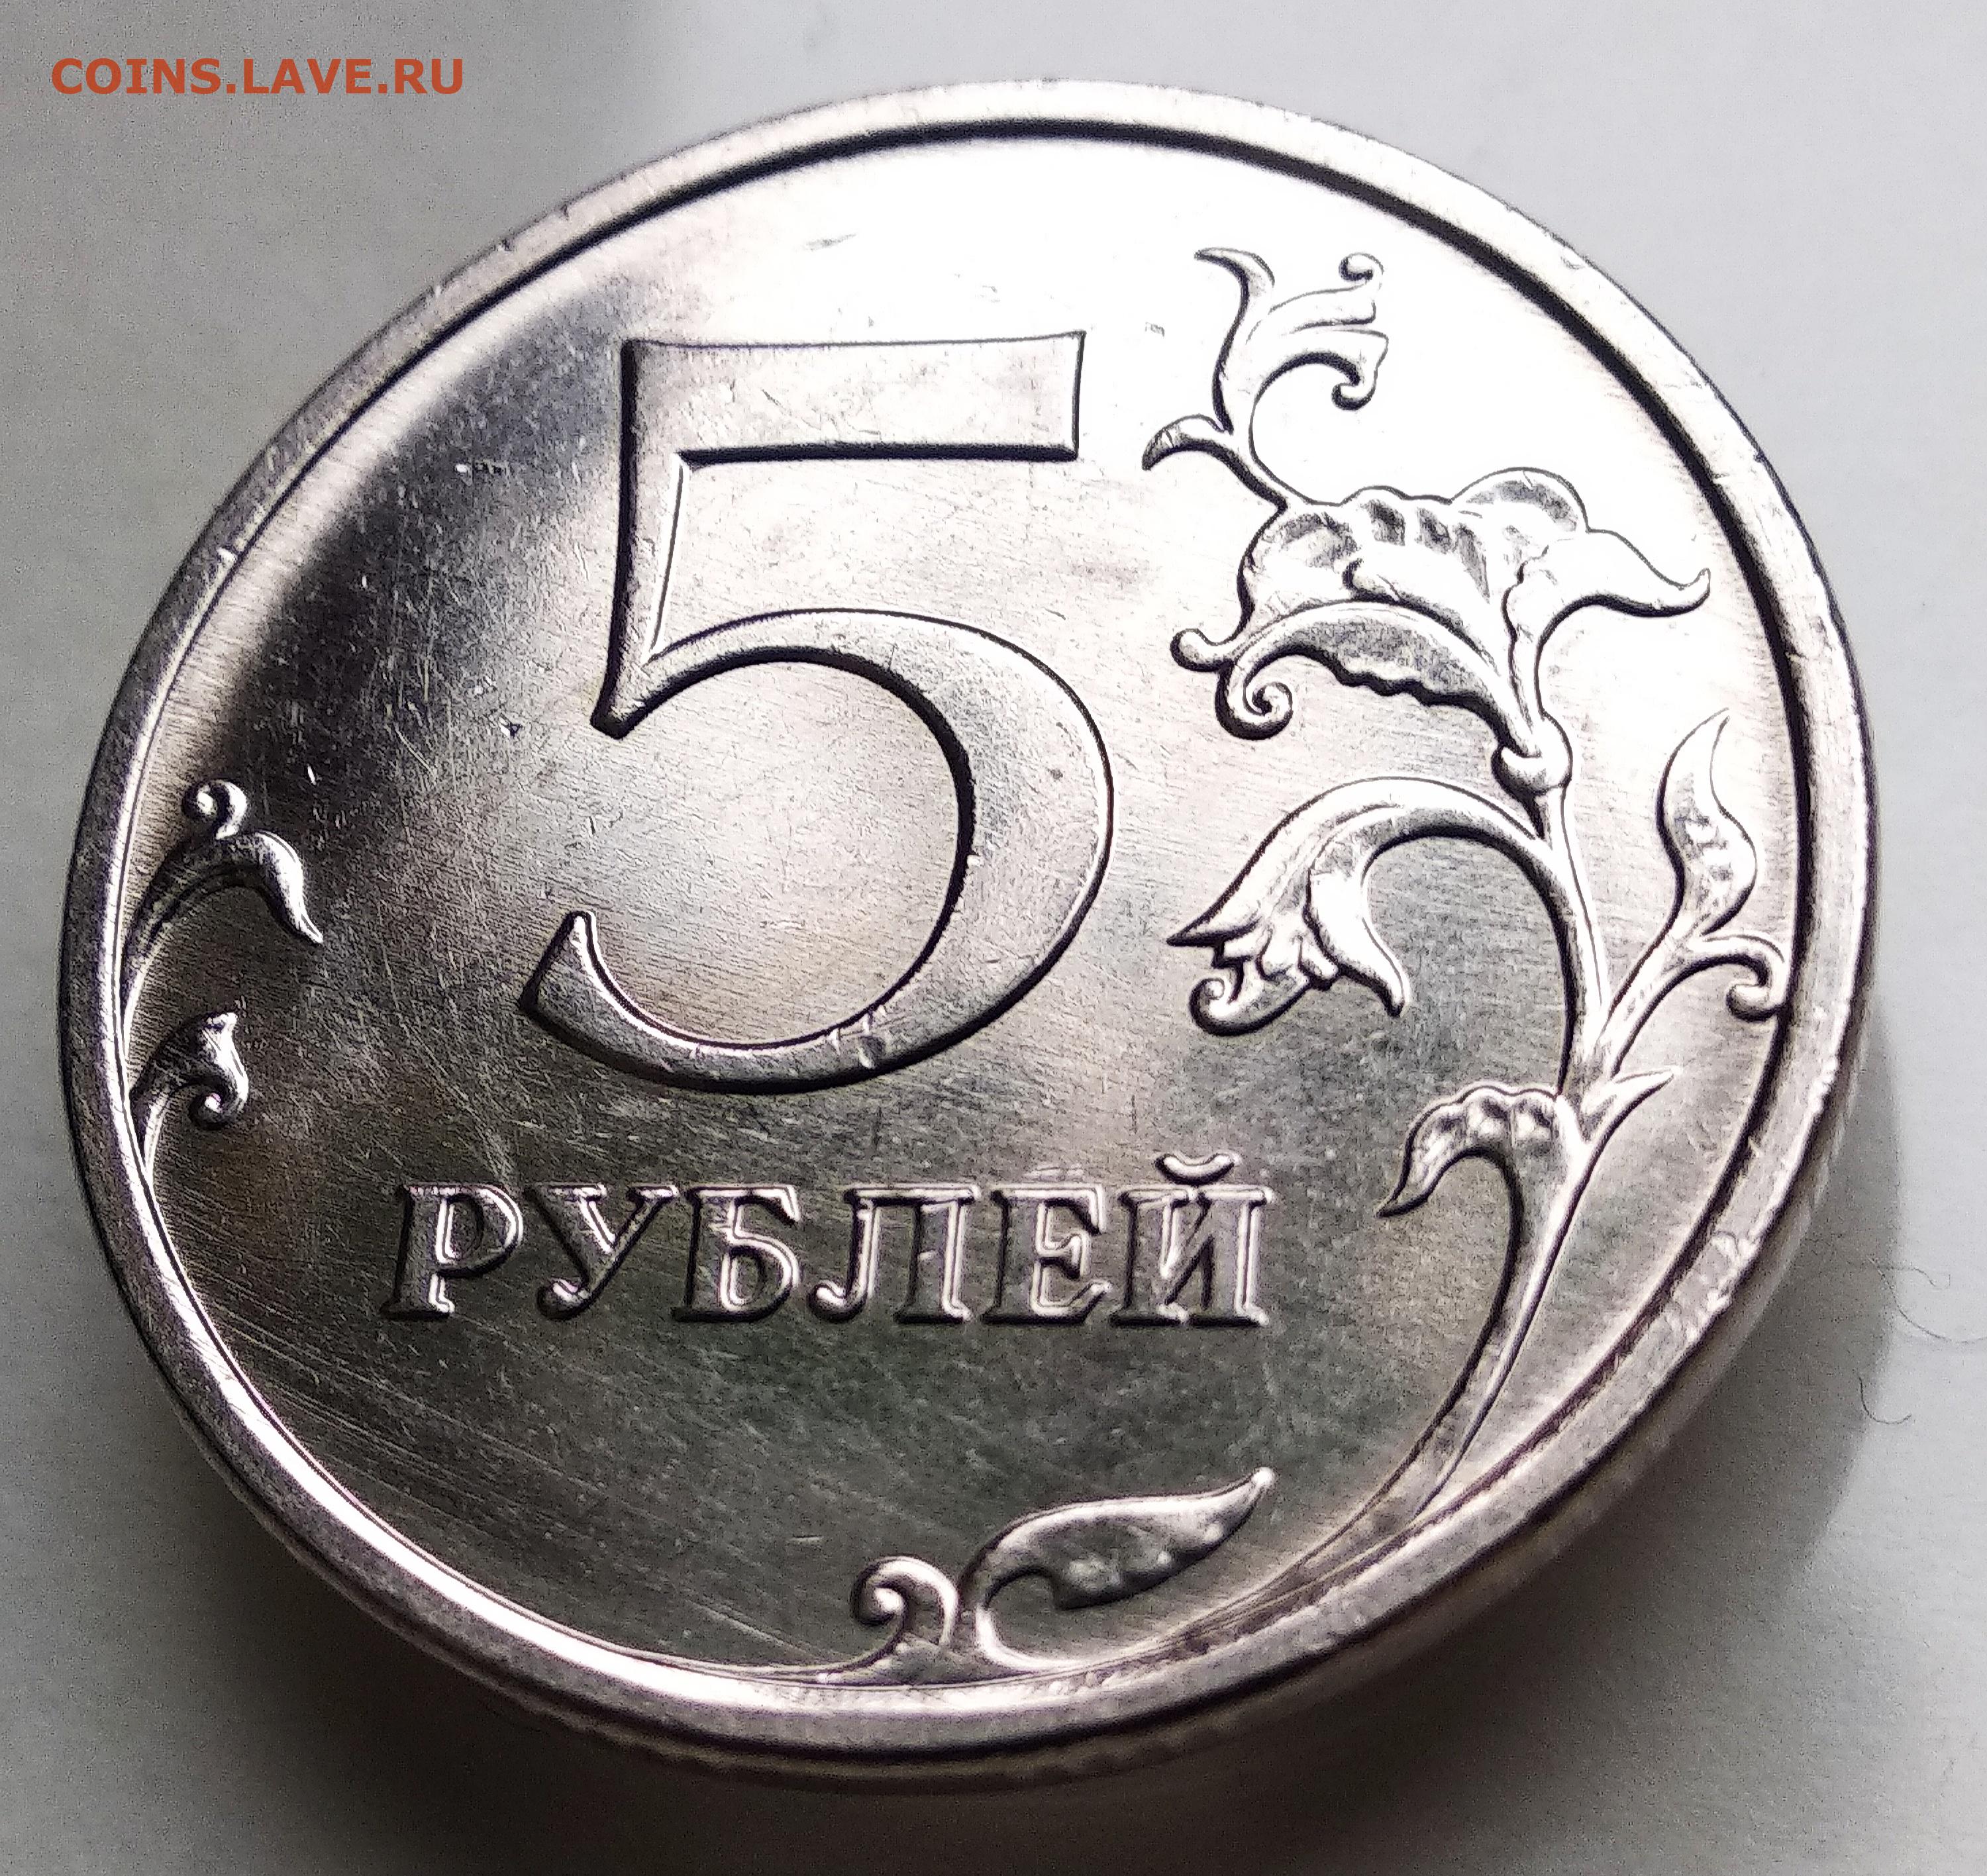 19 9 в рублях. 22 Рубля. Советские 5 рублей. Рубль 22 года. Фс22 рубль.